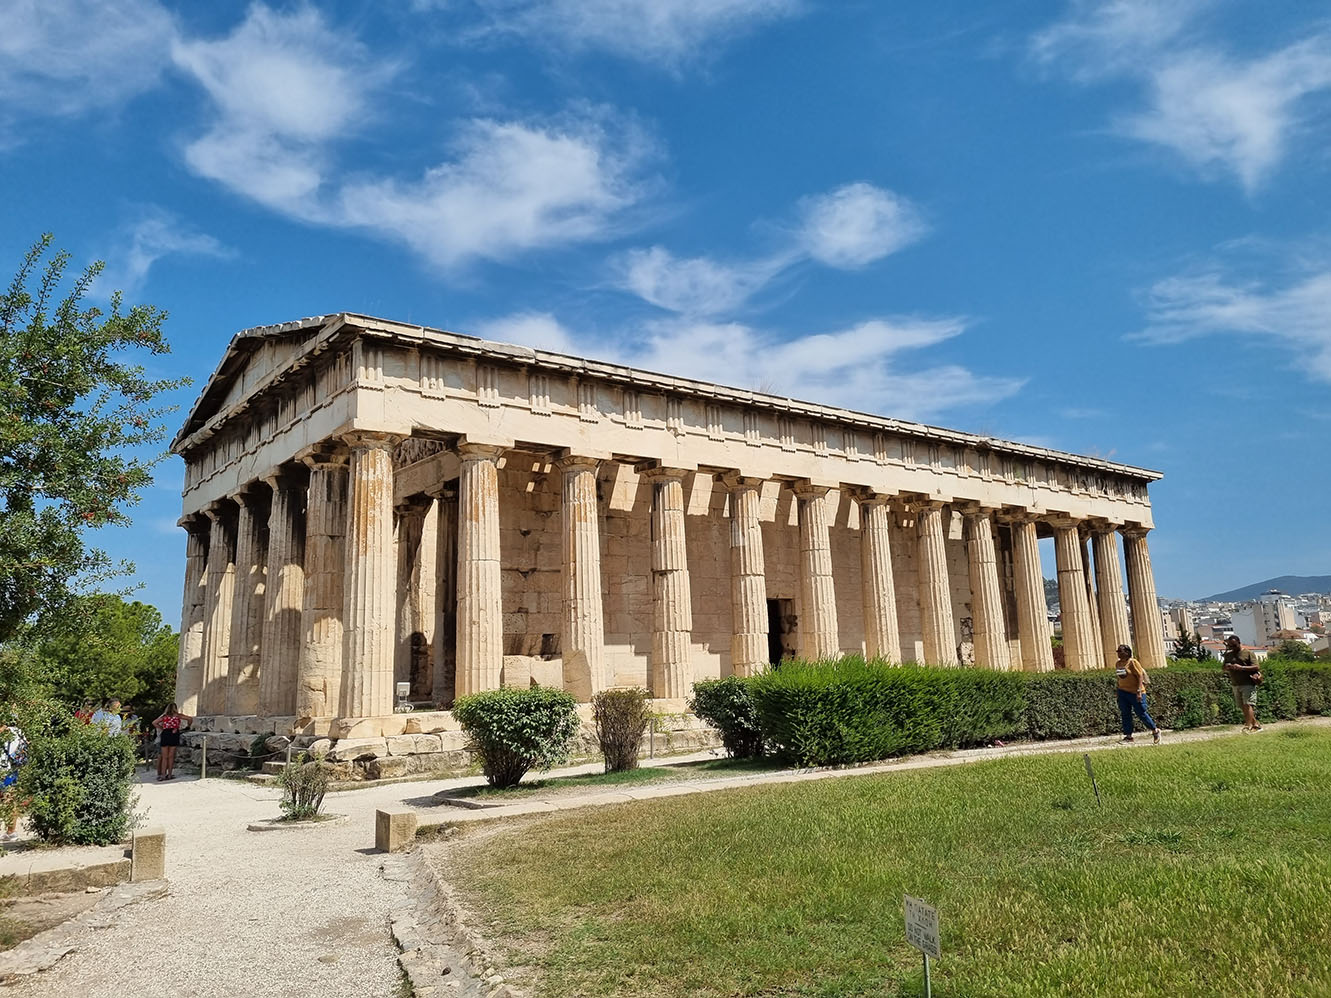 Der Tempel des Hephaistos in Athen, Griechenland, mit dorischen Säulen und intaktem Dach, unter einem klaren blauen Himmel, mit einer vorbeigehenden Person und viel Grün drumherum.